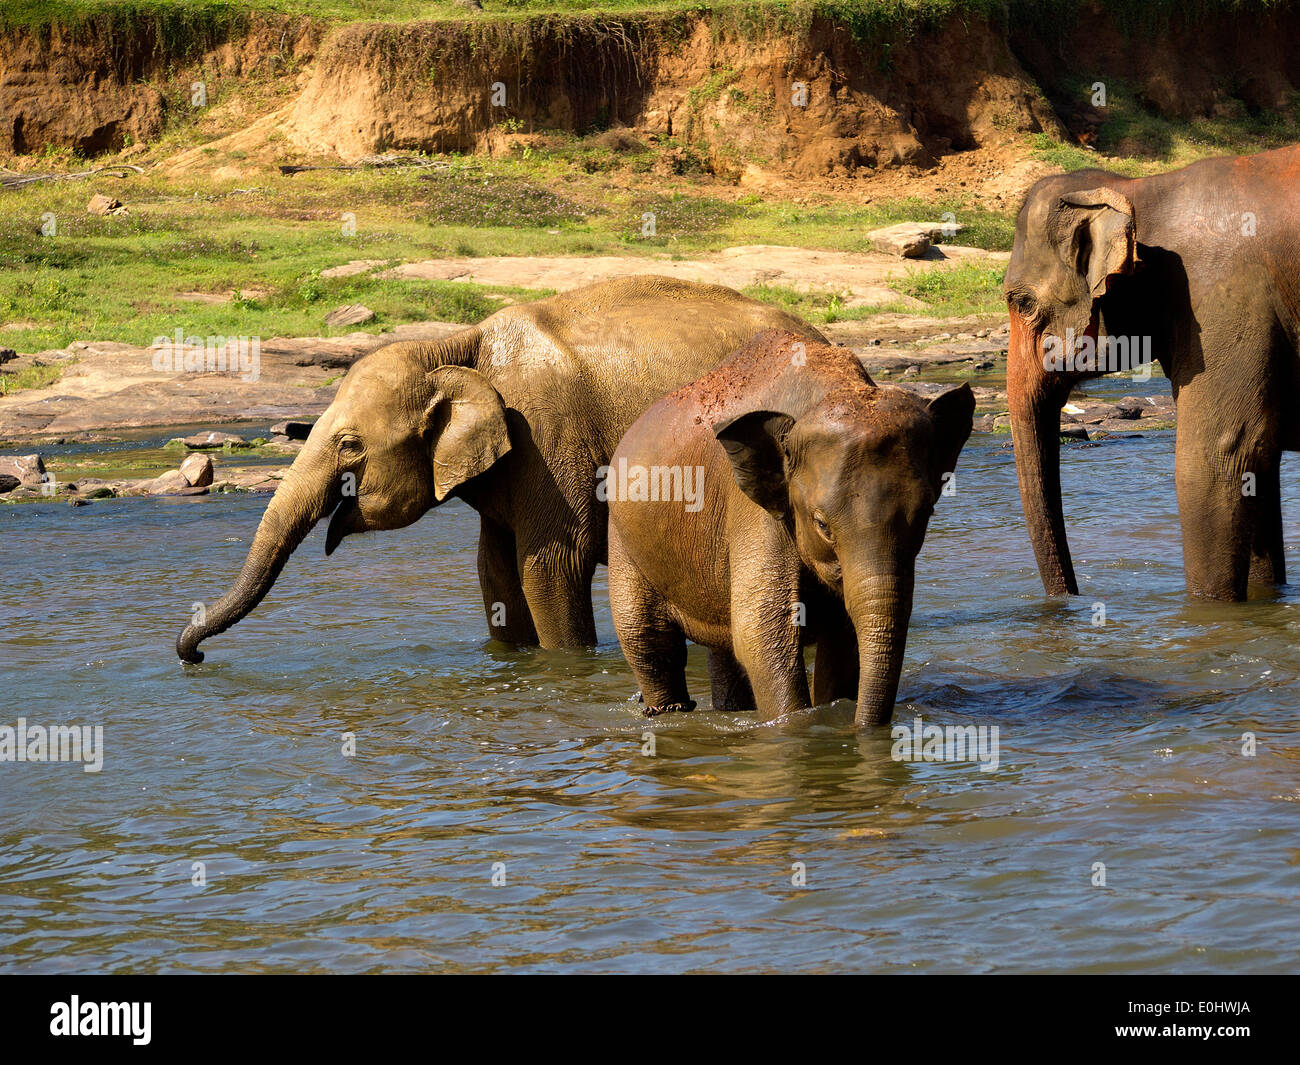 Elephants at the water hole 3 Elefanten am Wasser Ansichtskarte D 